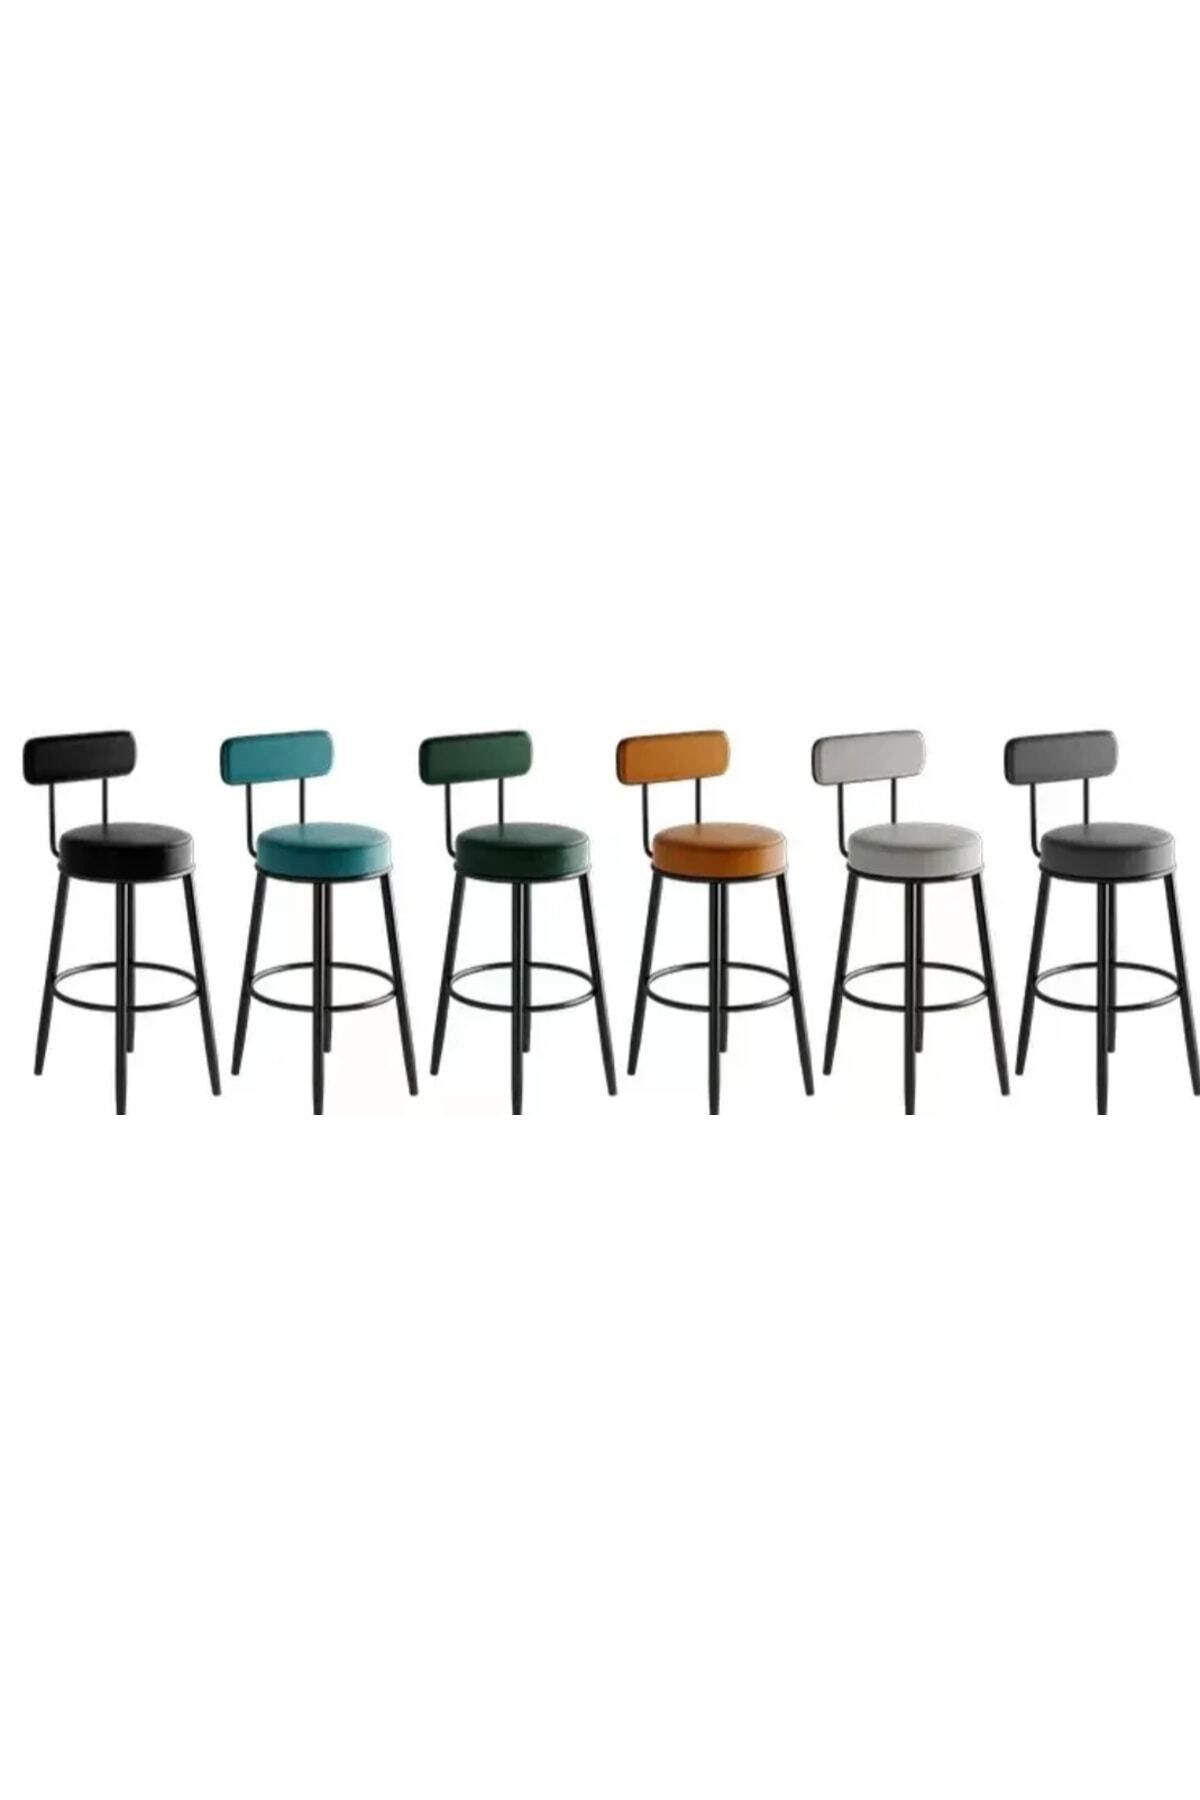 J&S QUALİTY Montaj Gerektirmez Hazır Bar Sandalyesi Ikea Kadın Tasarımı 65 Cm Mutfak Adası Bar Taburesi